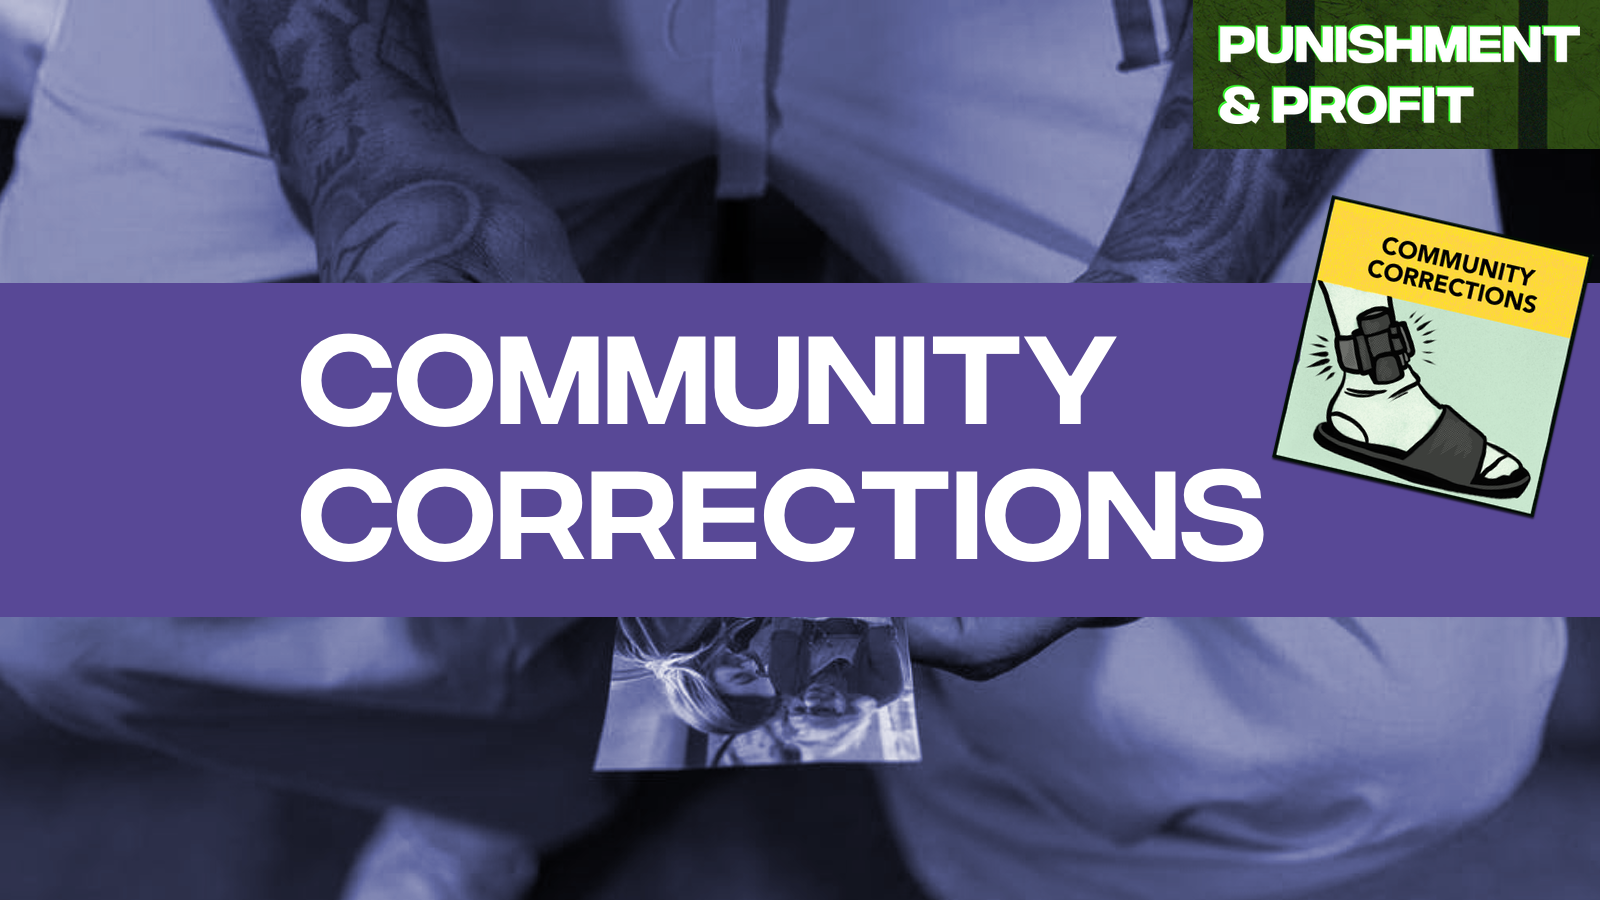 Punishment & Profit: Community Corrections